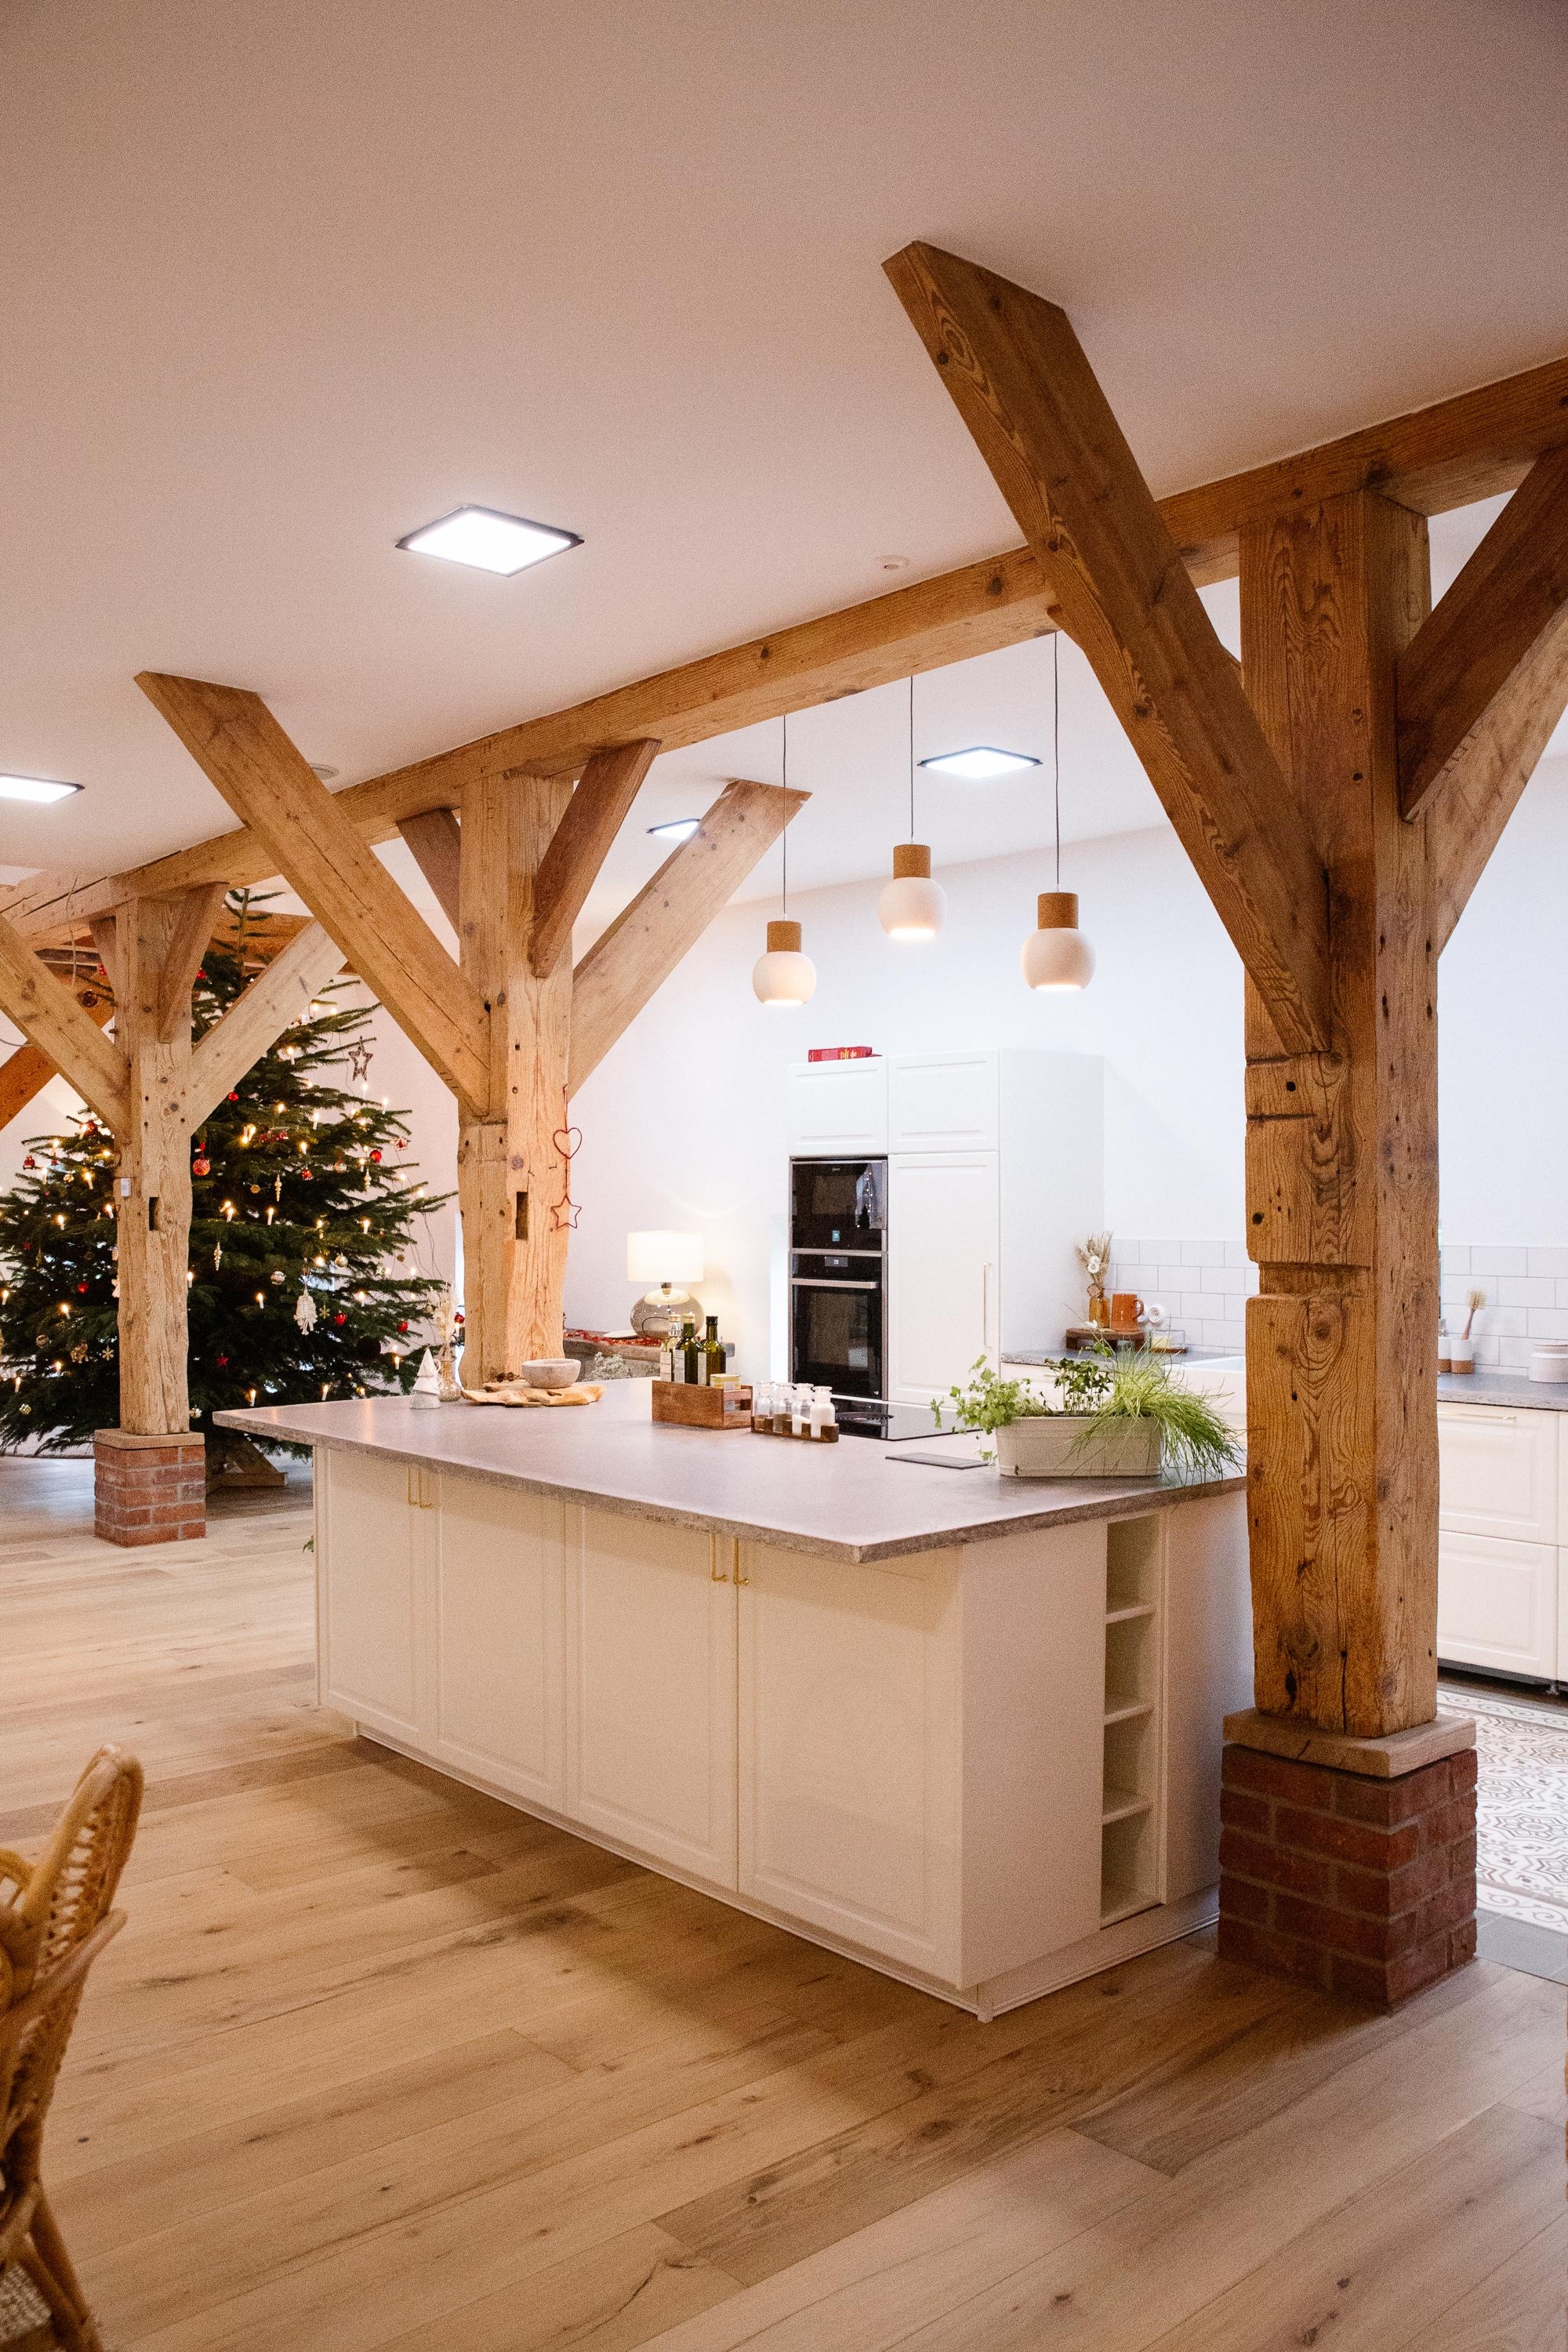 Morgen ist es schon soweit 🥰 Weihnachten kann kommen 🖤
#zementfliesen #küche #resthof